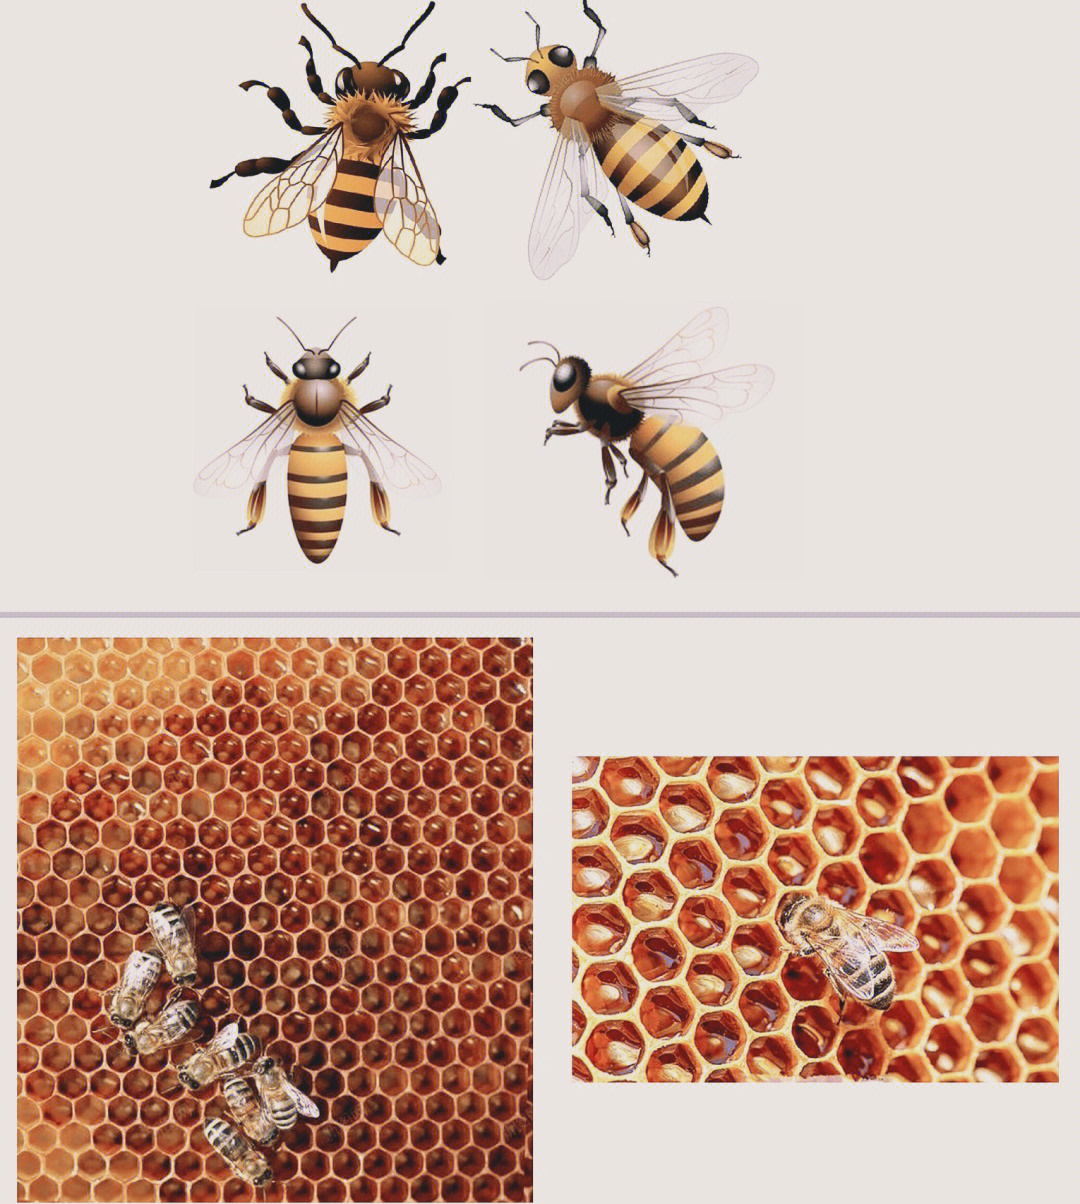 蜜蜂的外形特点图片